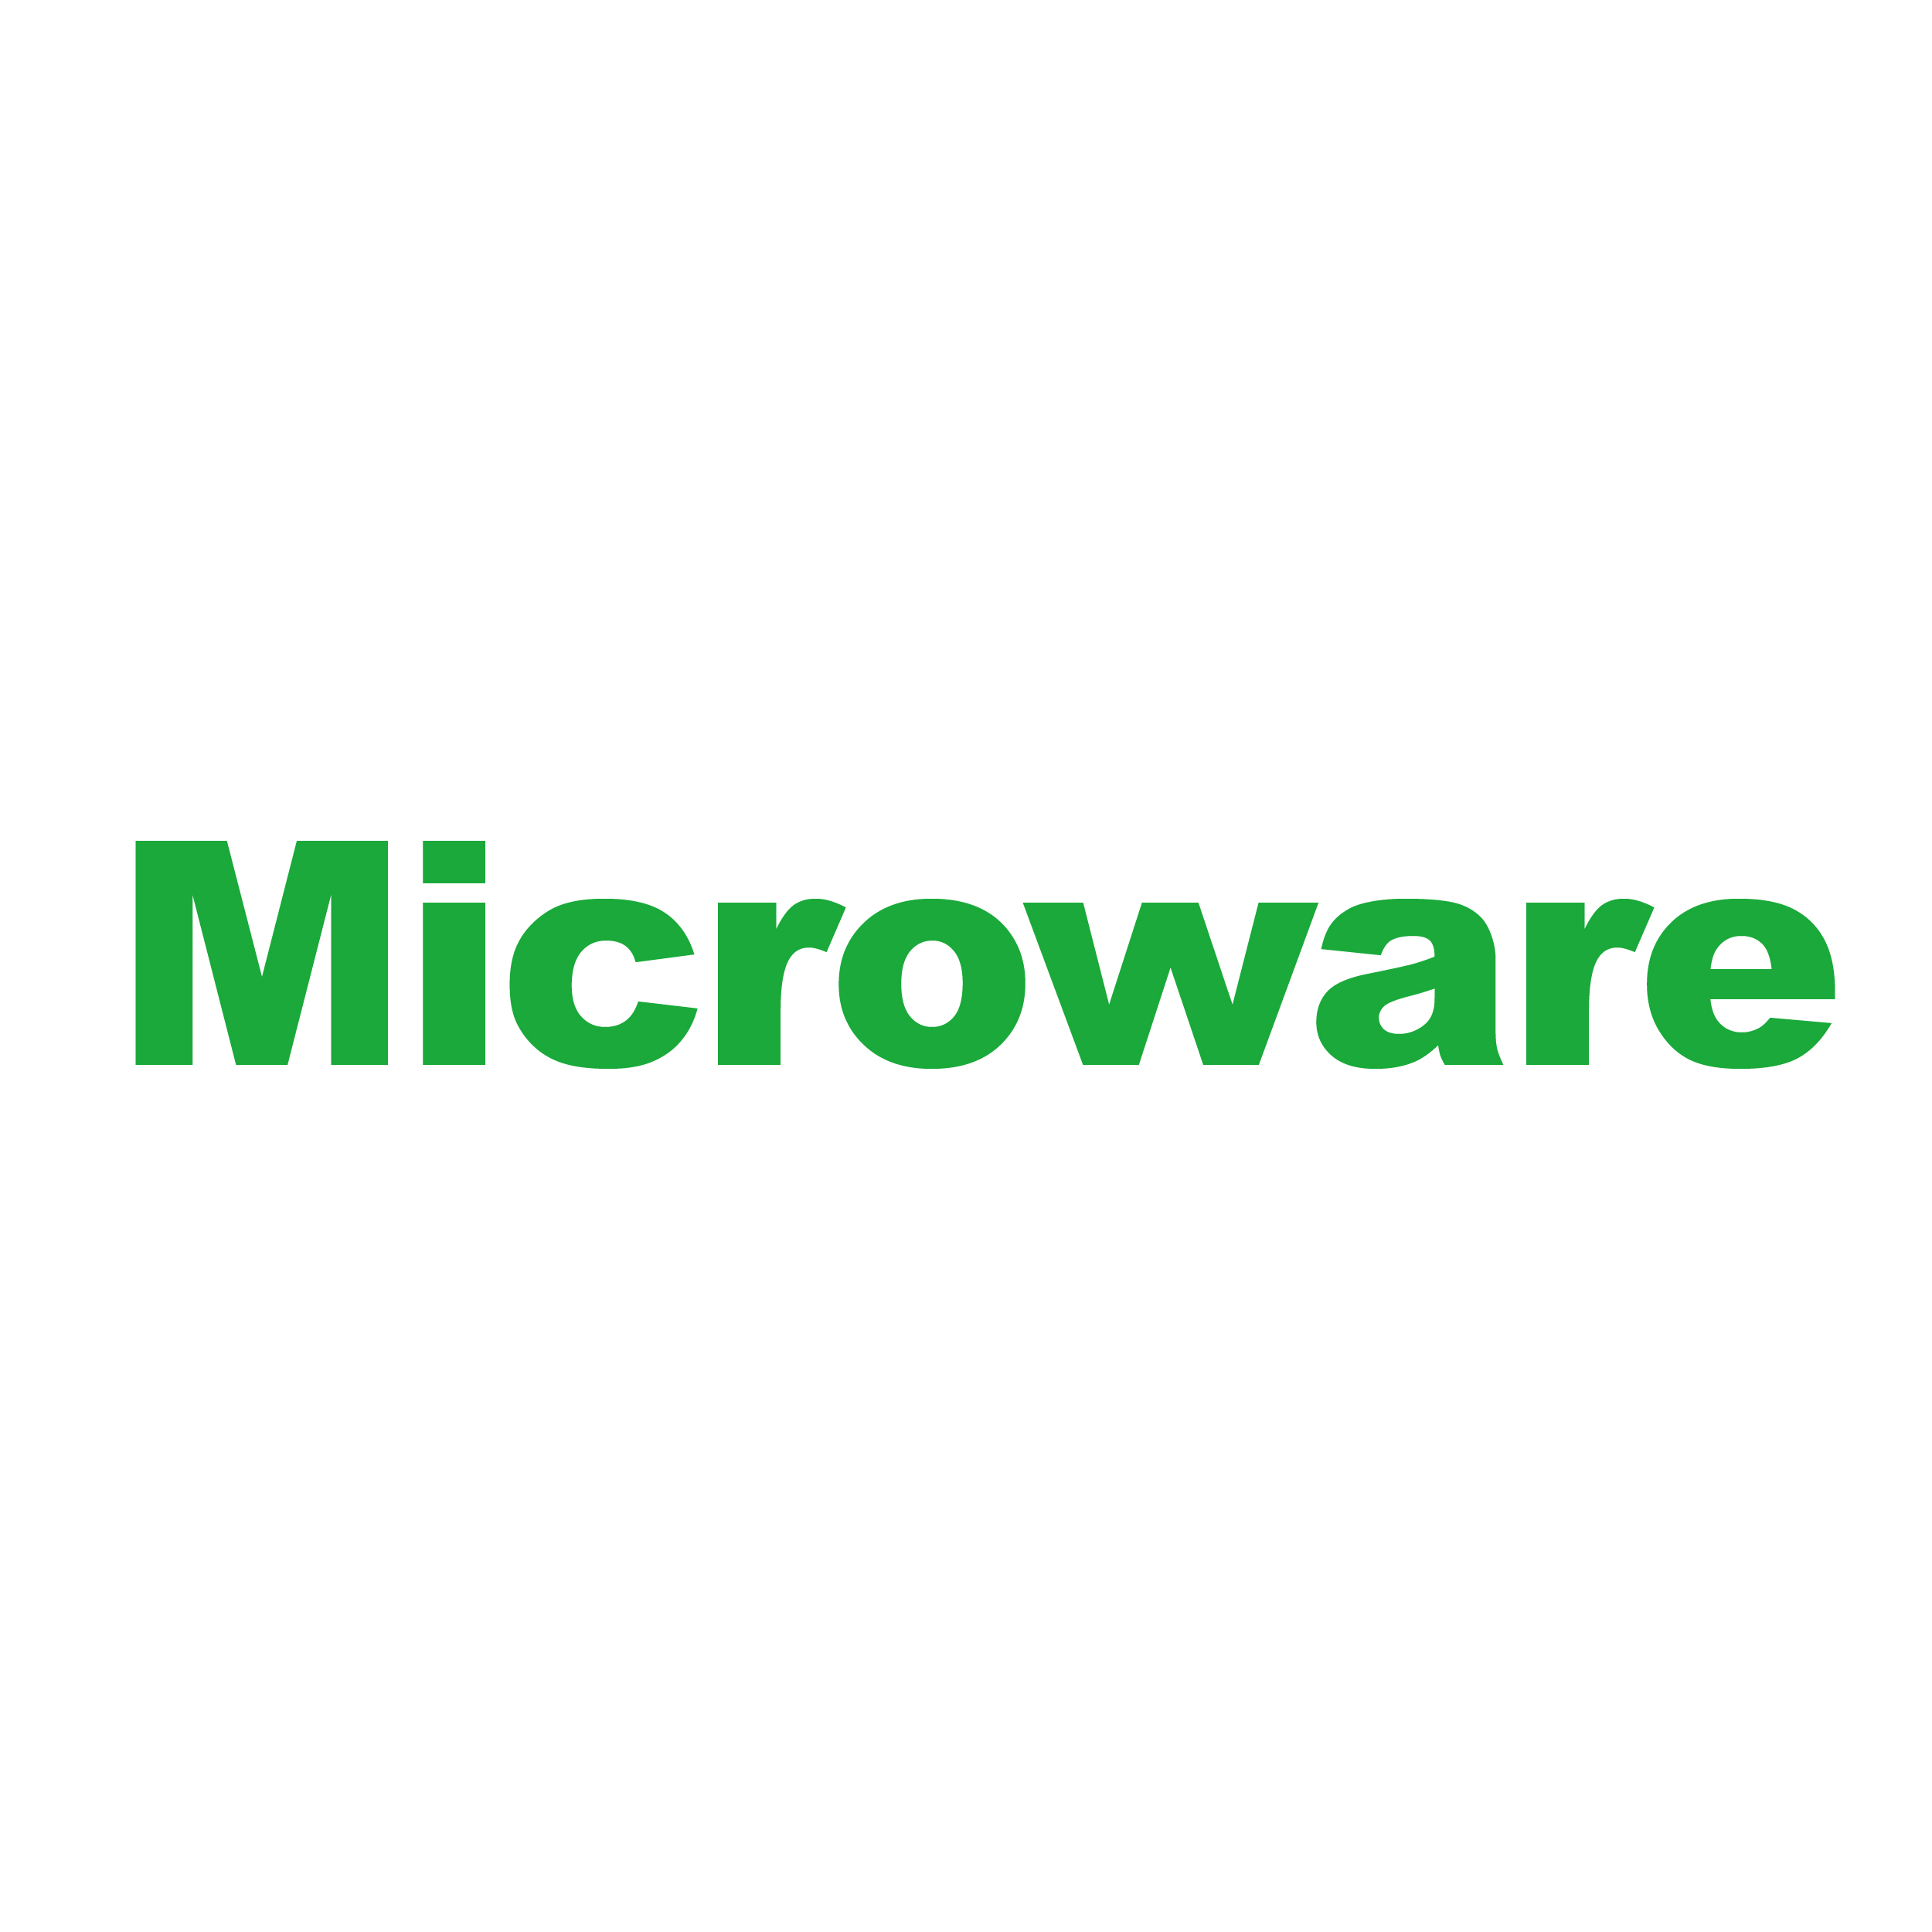 23-0713_全微 Microware-大頭貼-v1_01-Microware.jpg